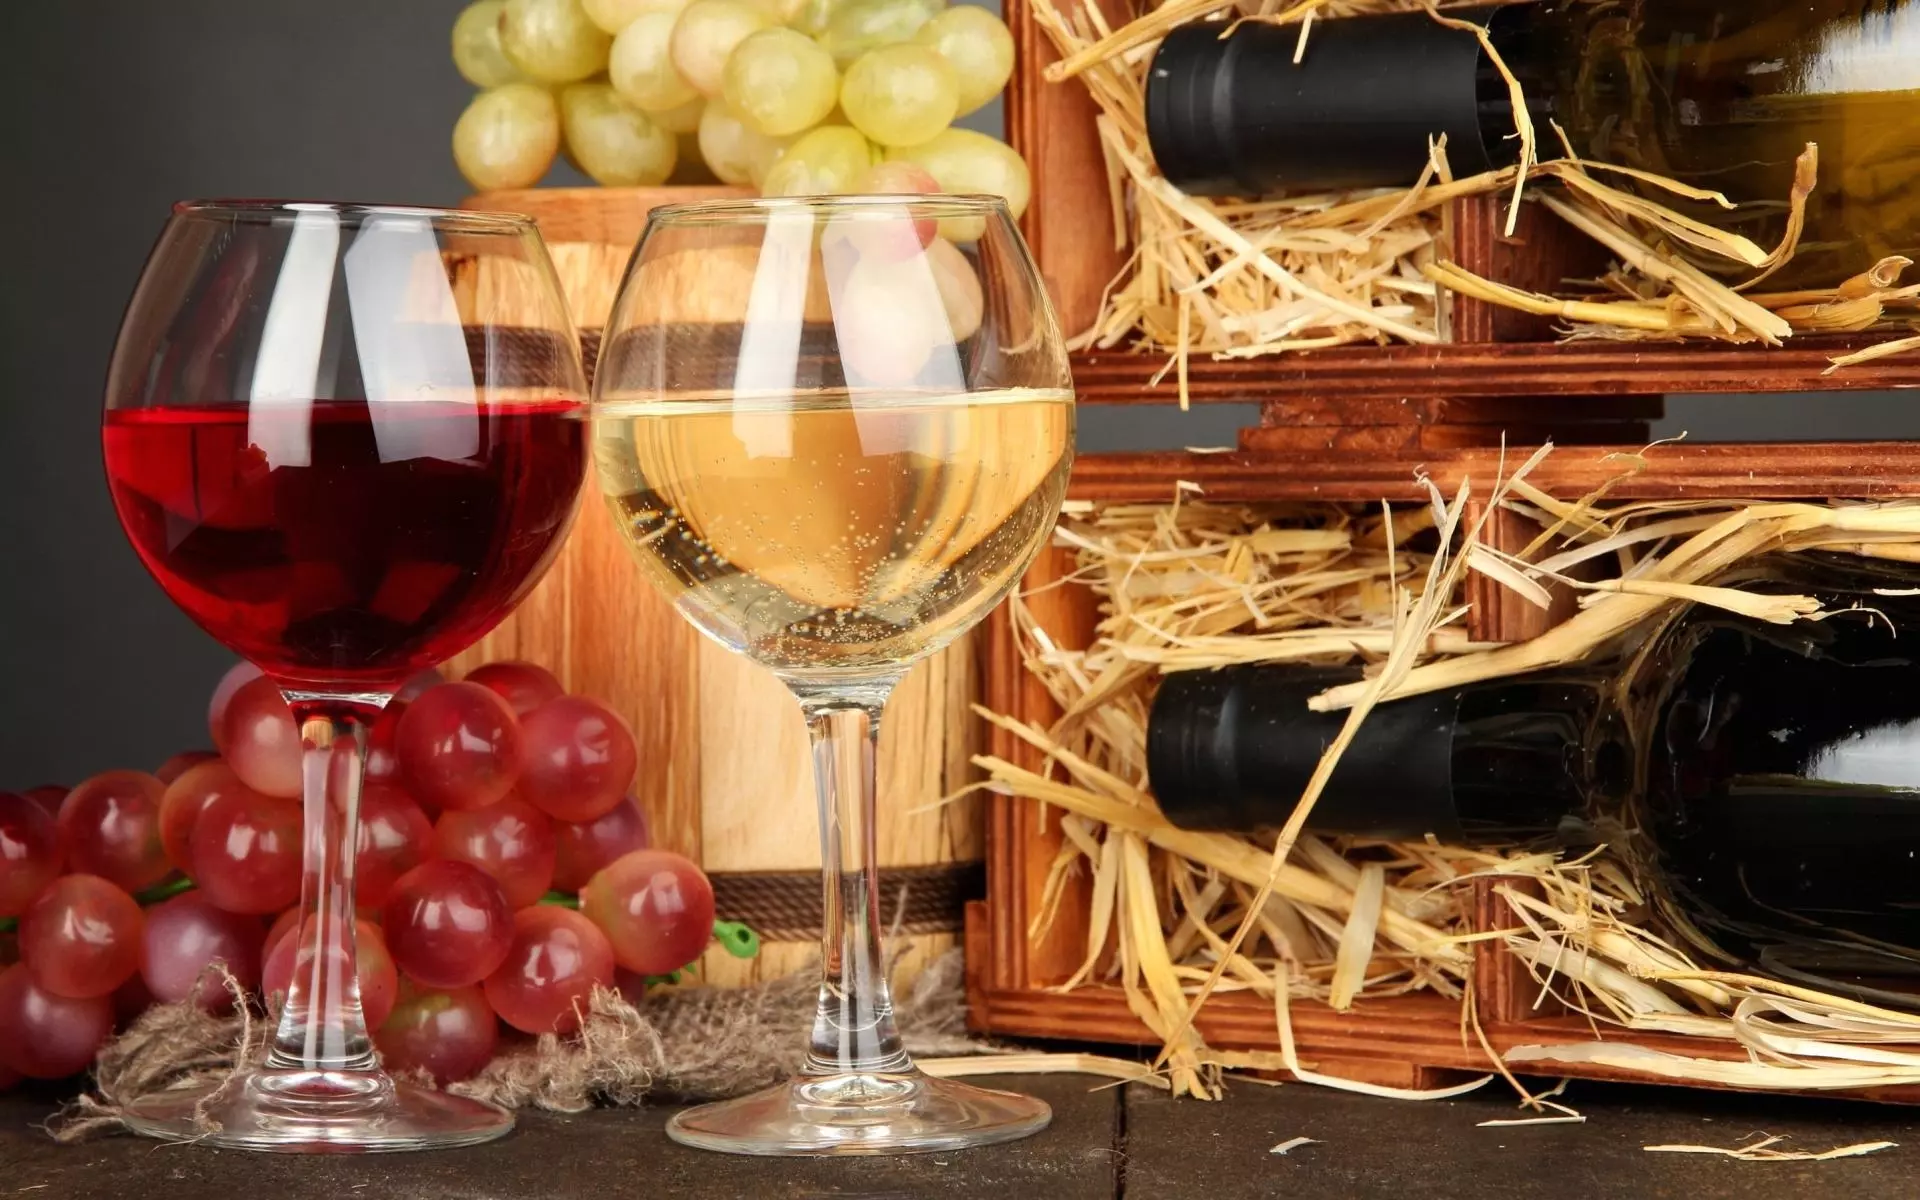 Делаем правильный выбор: какое вино подходит для глинтвейна